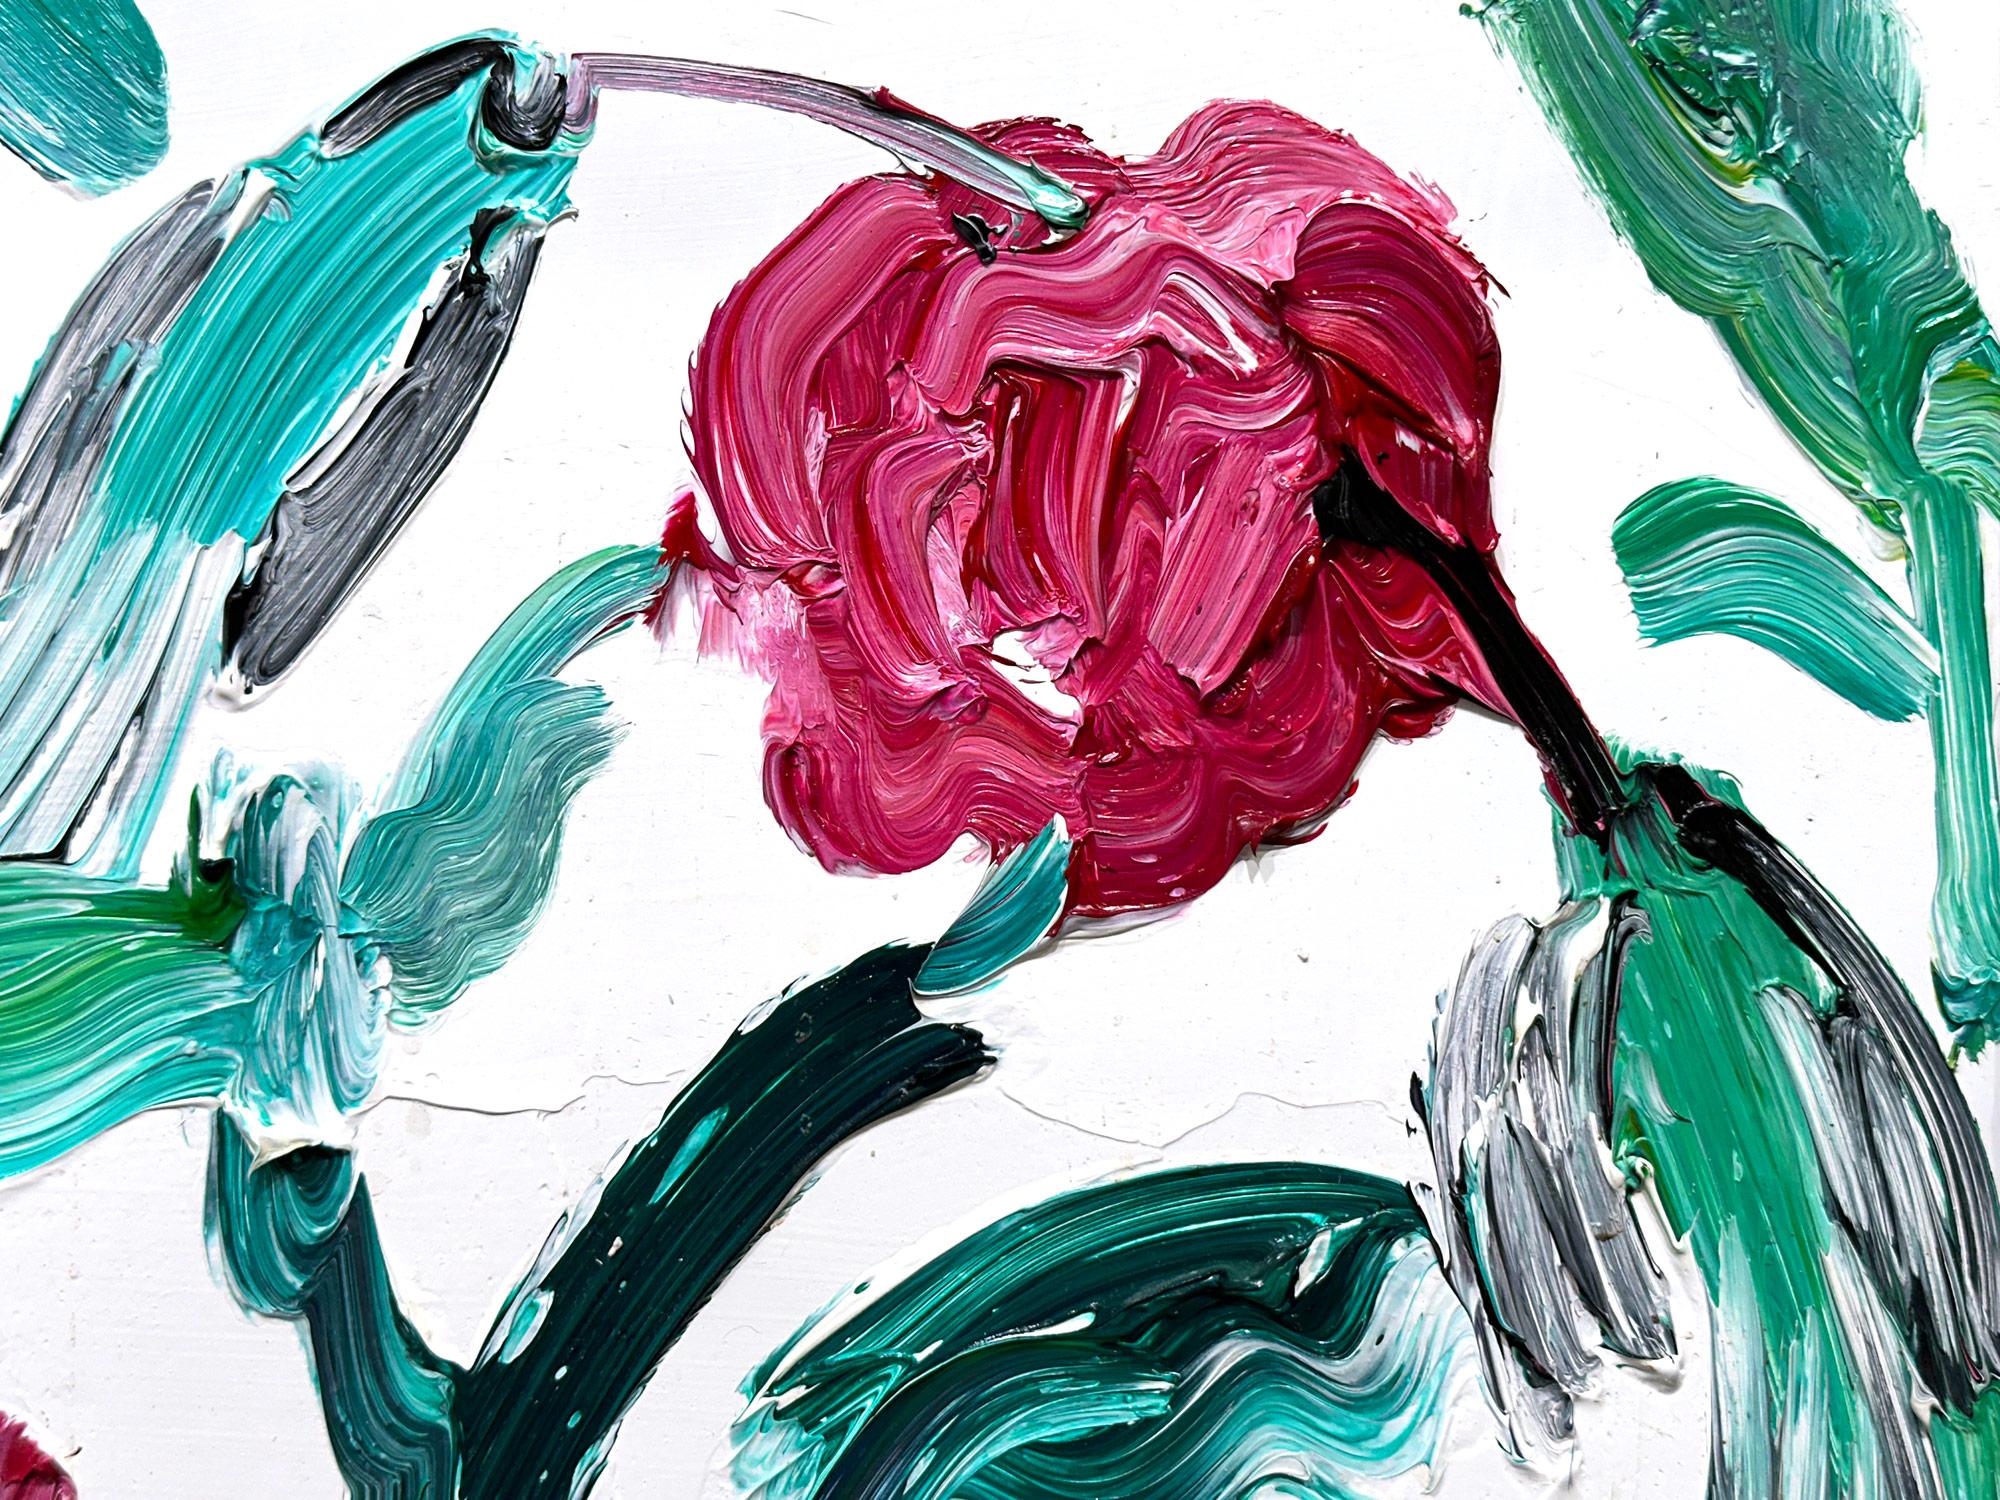 Eine wunderbare Komposition eines von Slonems ikonischsten Motiven: Kolibris. Der dicke Farbauftrag ist deutlich zu erkennen, wenn er Schicht um Schicht Ölfarbe aufträgt, die in einem satten Rosenrot die Rosen und den weißen Hintergrund darstellt.